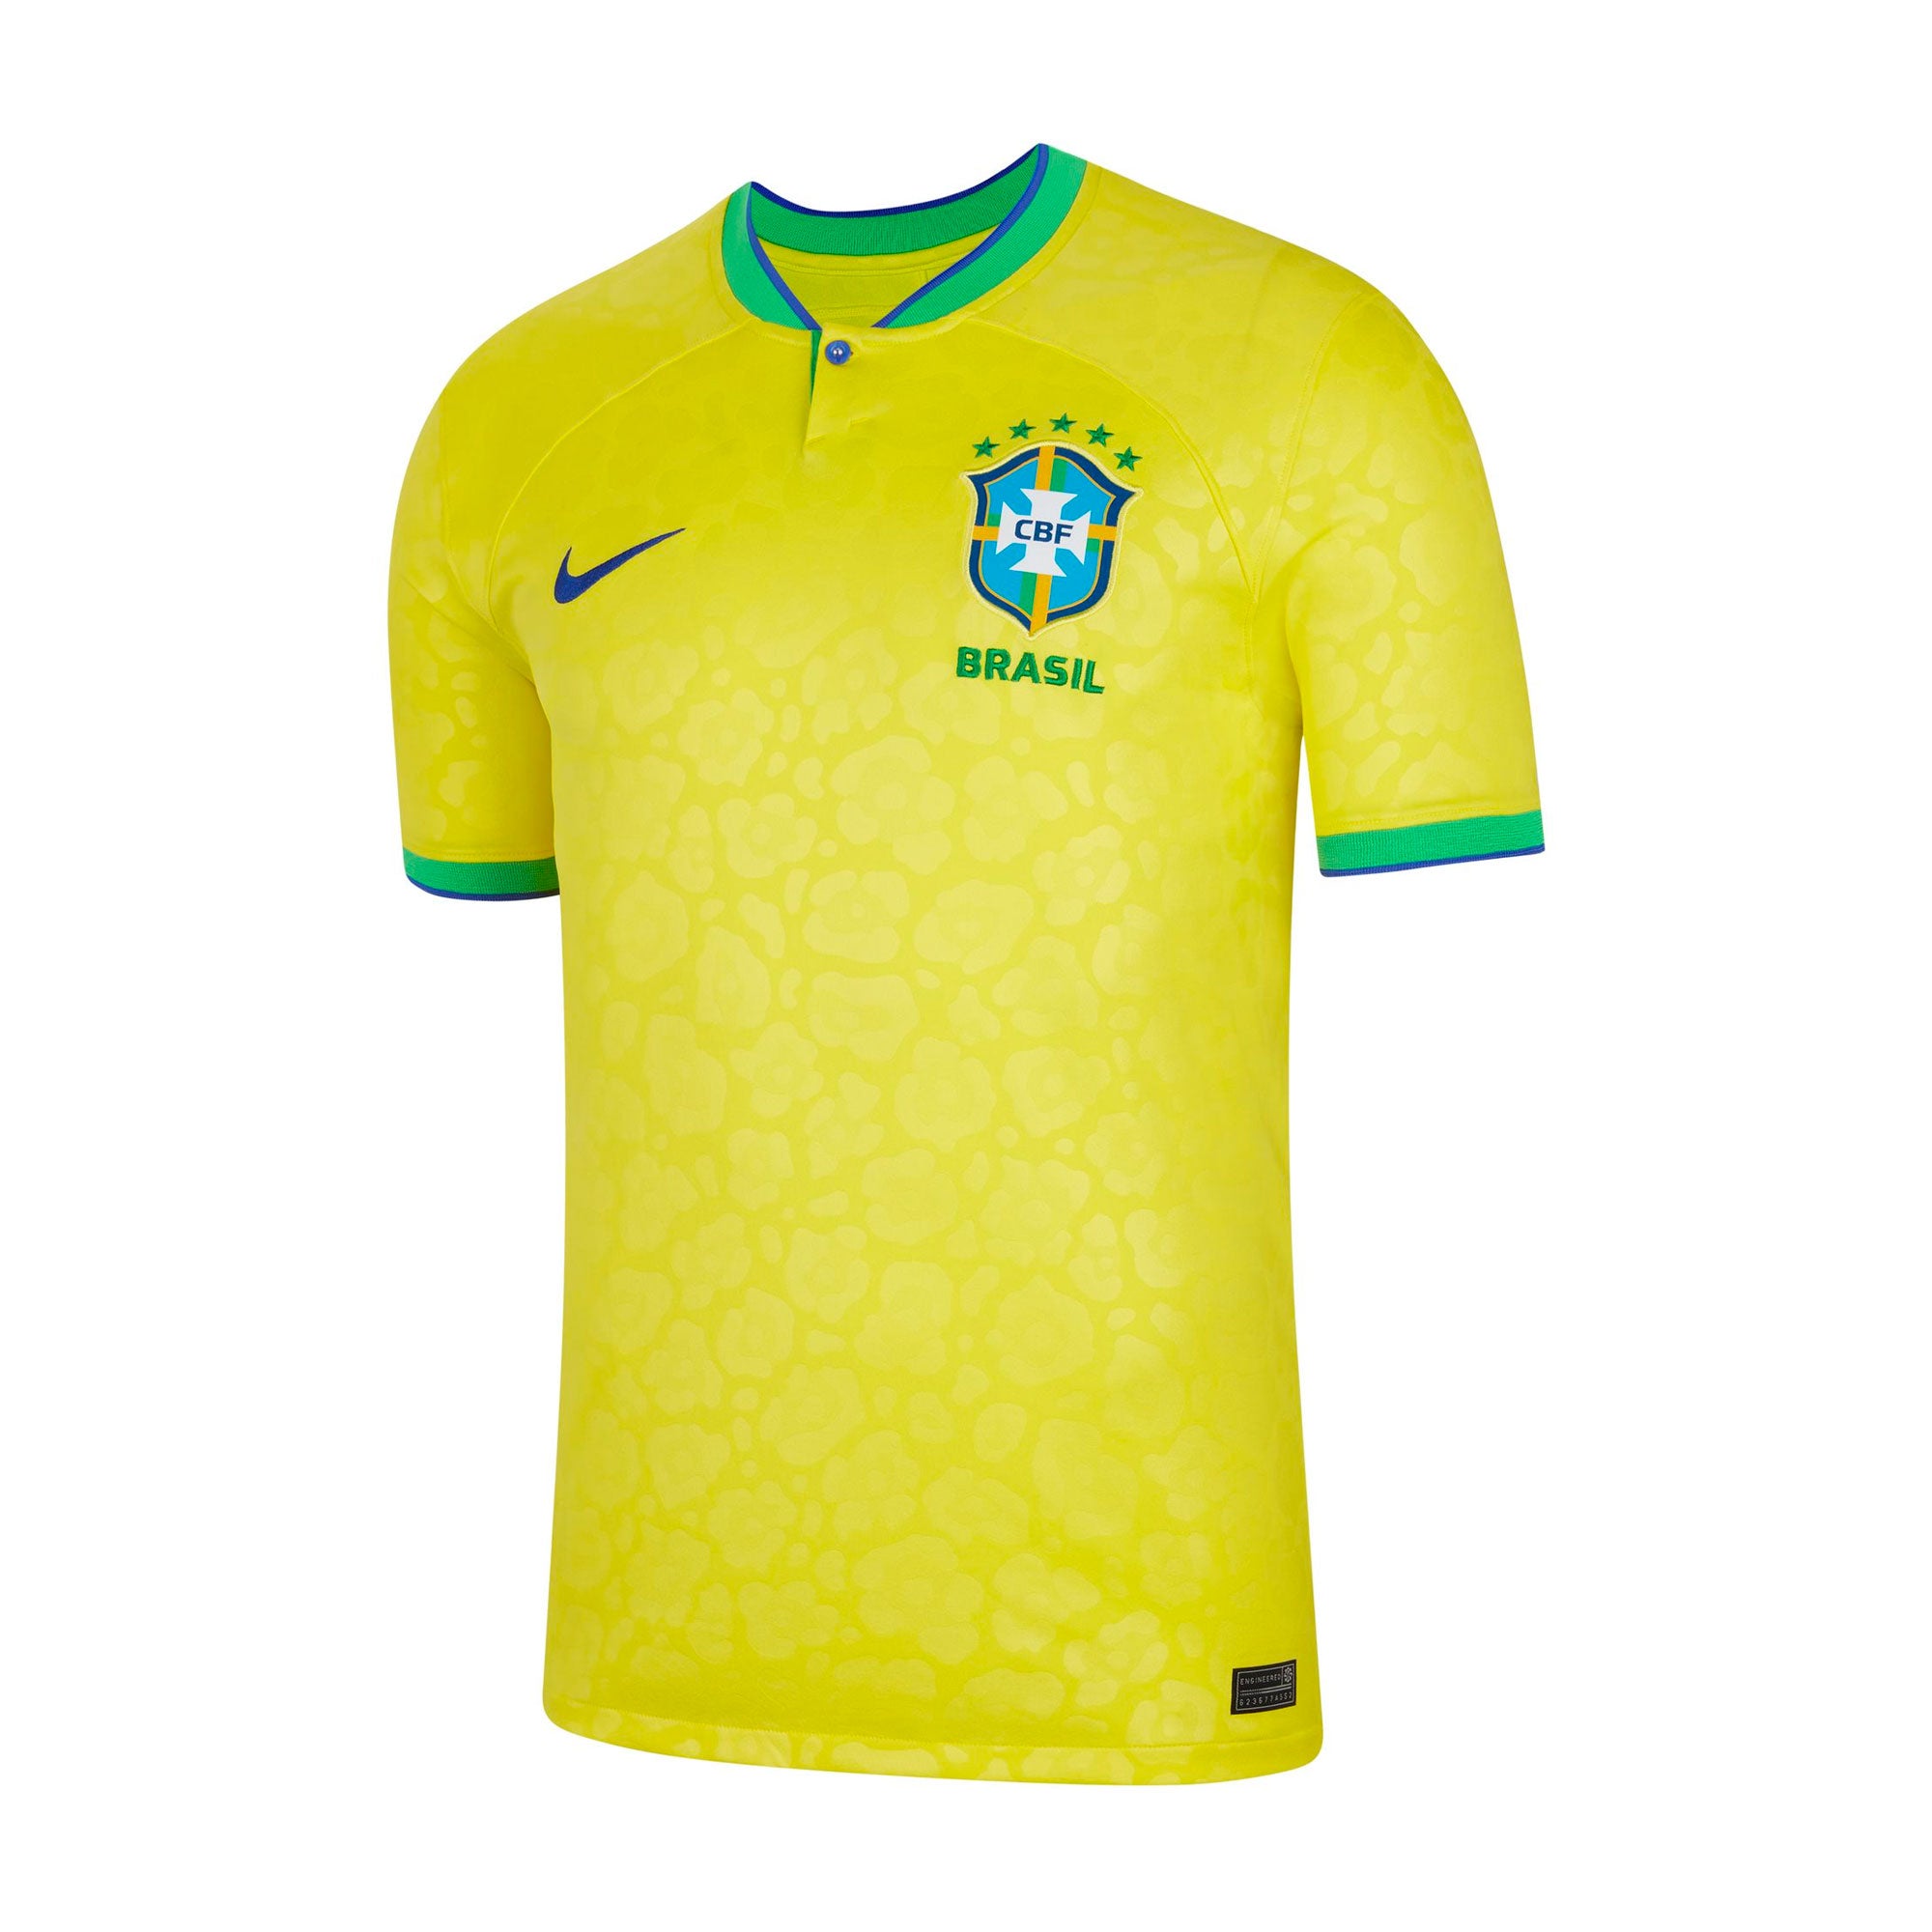 Nike Men's Brazil Home Jersey 22 Yellow / XL